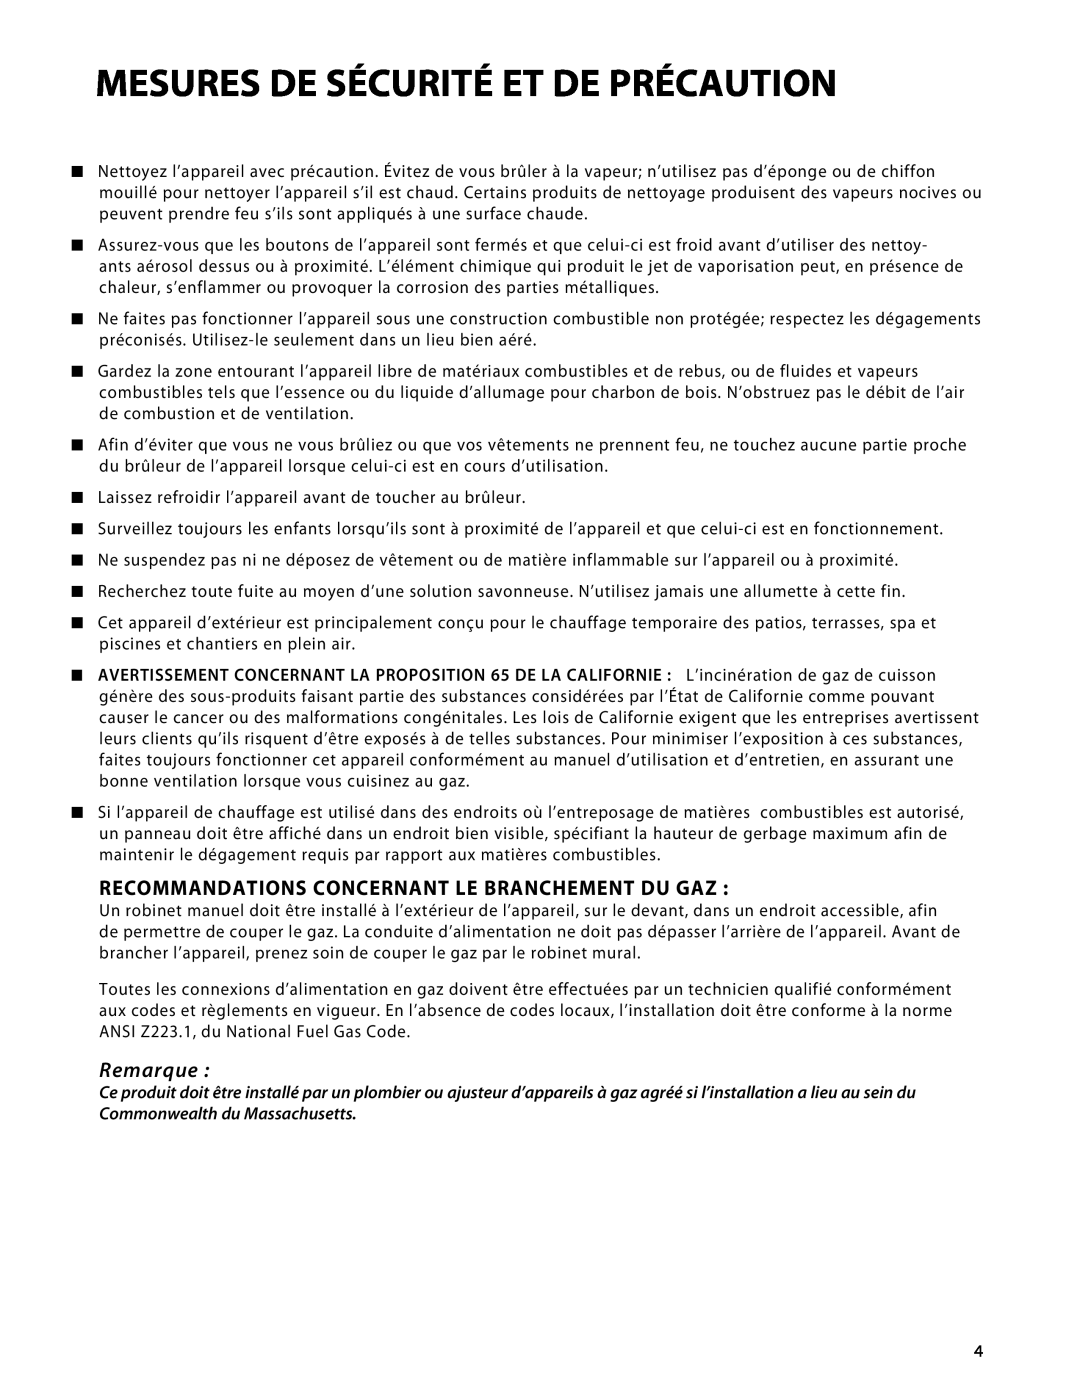 Fisher & Paykel DRH-48N Recommandations Concernant Le Branchement Du Gaz, Remarque, Mesures De Sécurité Et De Précaution 